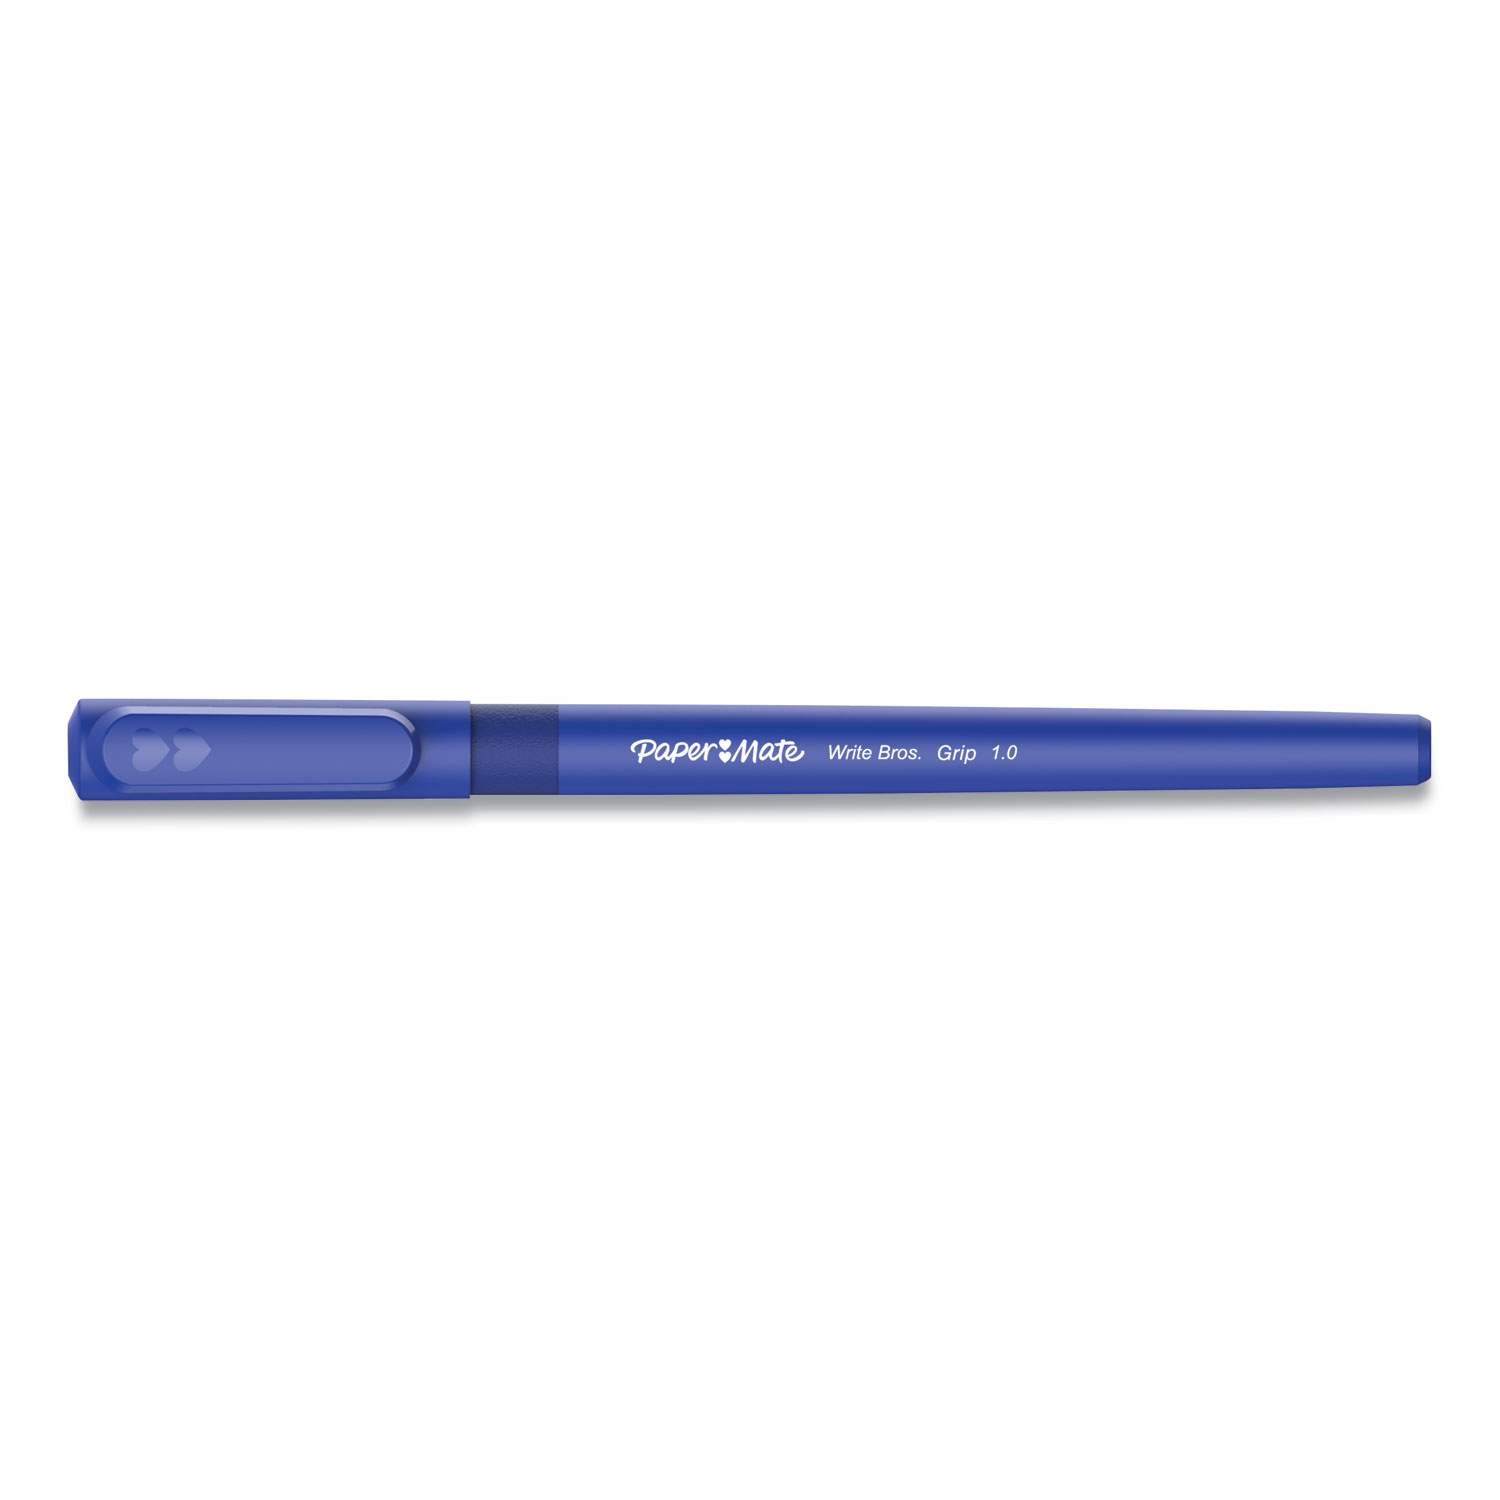  Paper Mate 2124506 Write Bros. Grip Ballpoint Pen, Medium, 1 mm, Blue Ink/Barrel, Dozen (PAP2124506) 